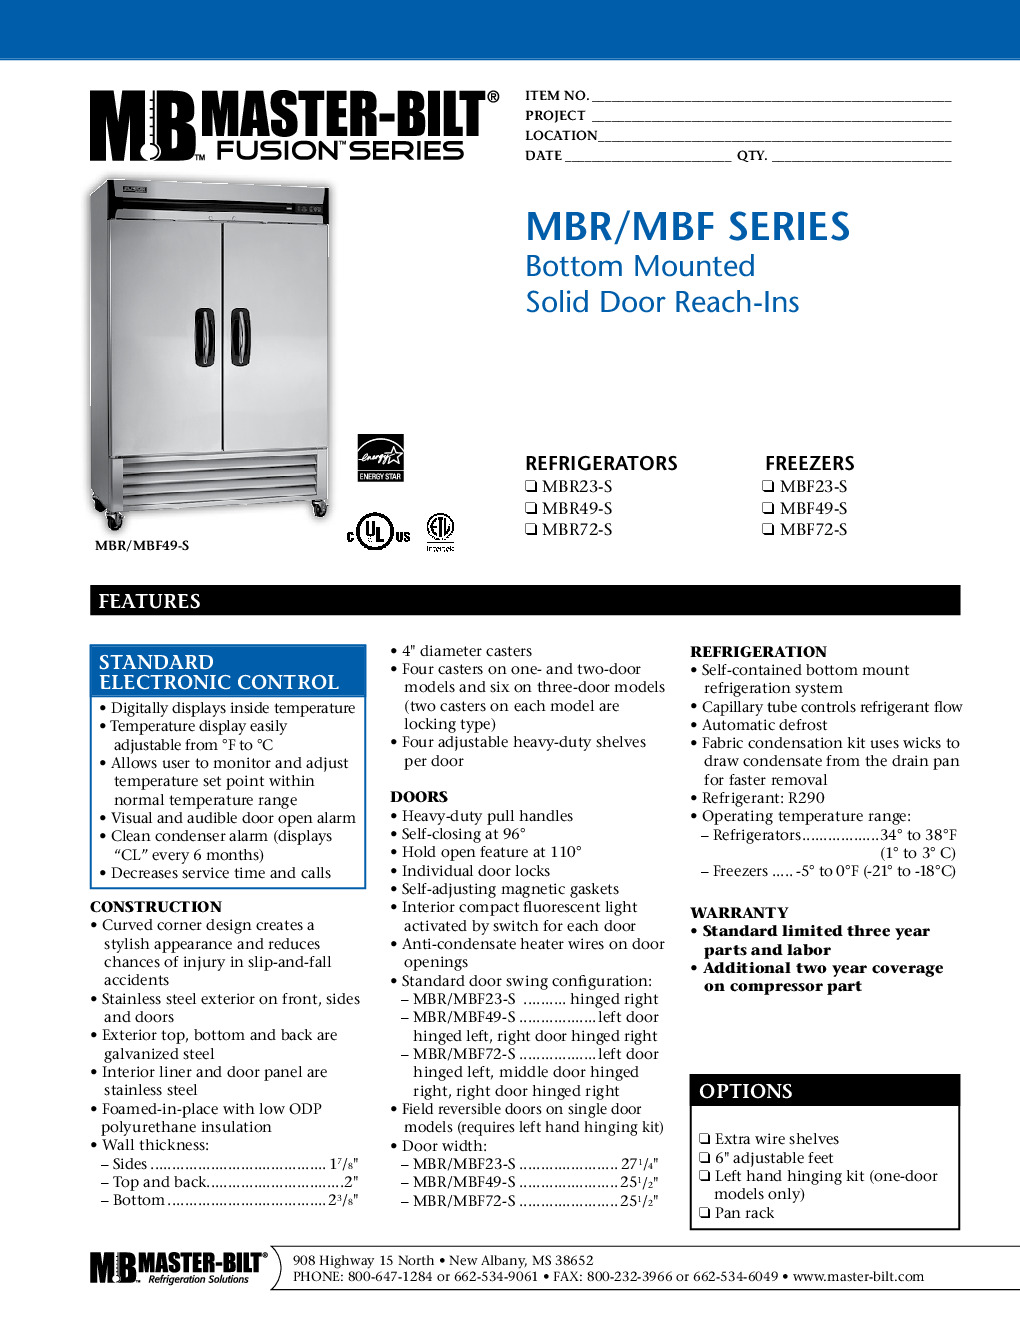 Master-Bilt MBF23-S Reach-In Freezer